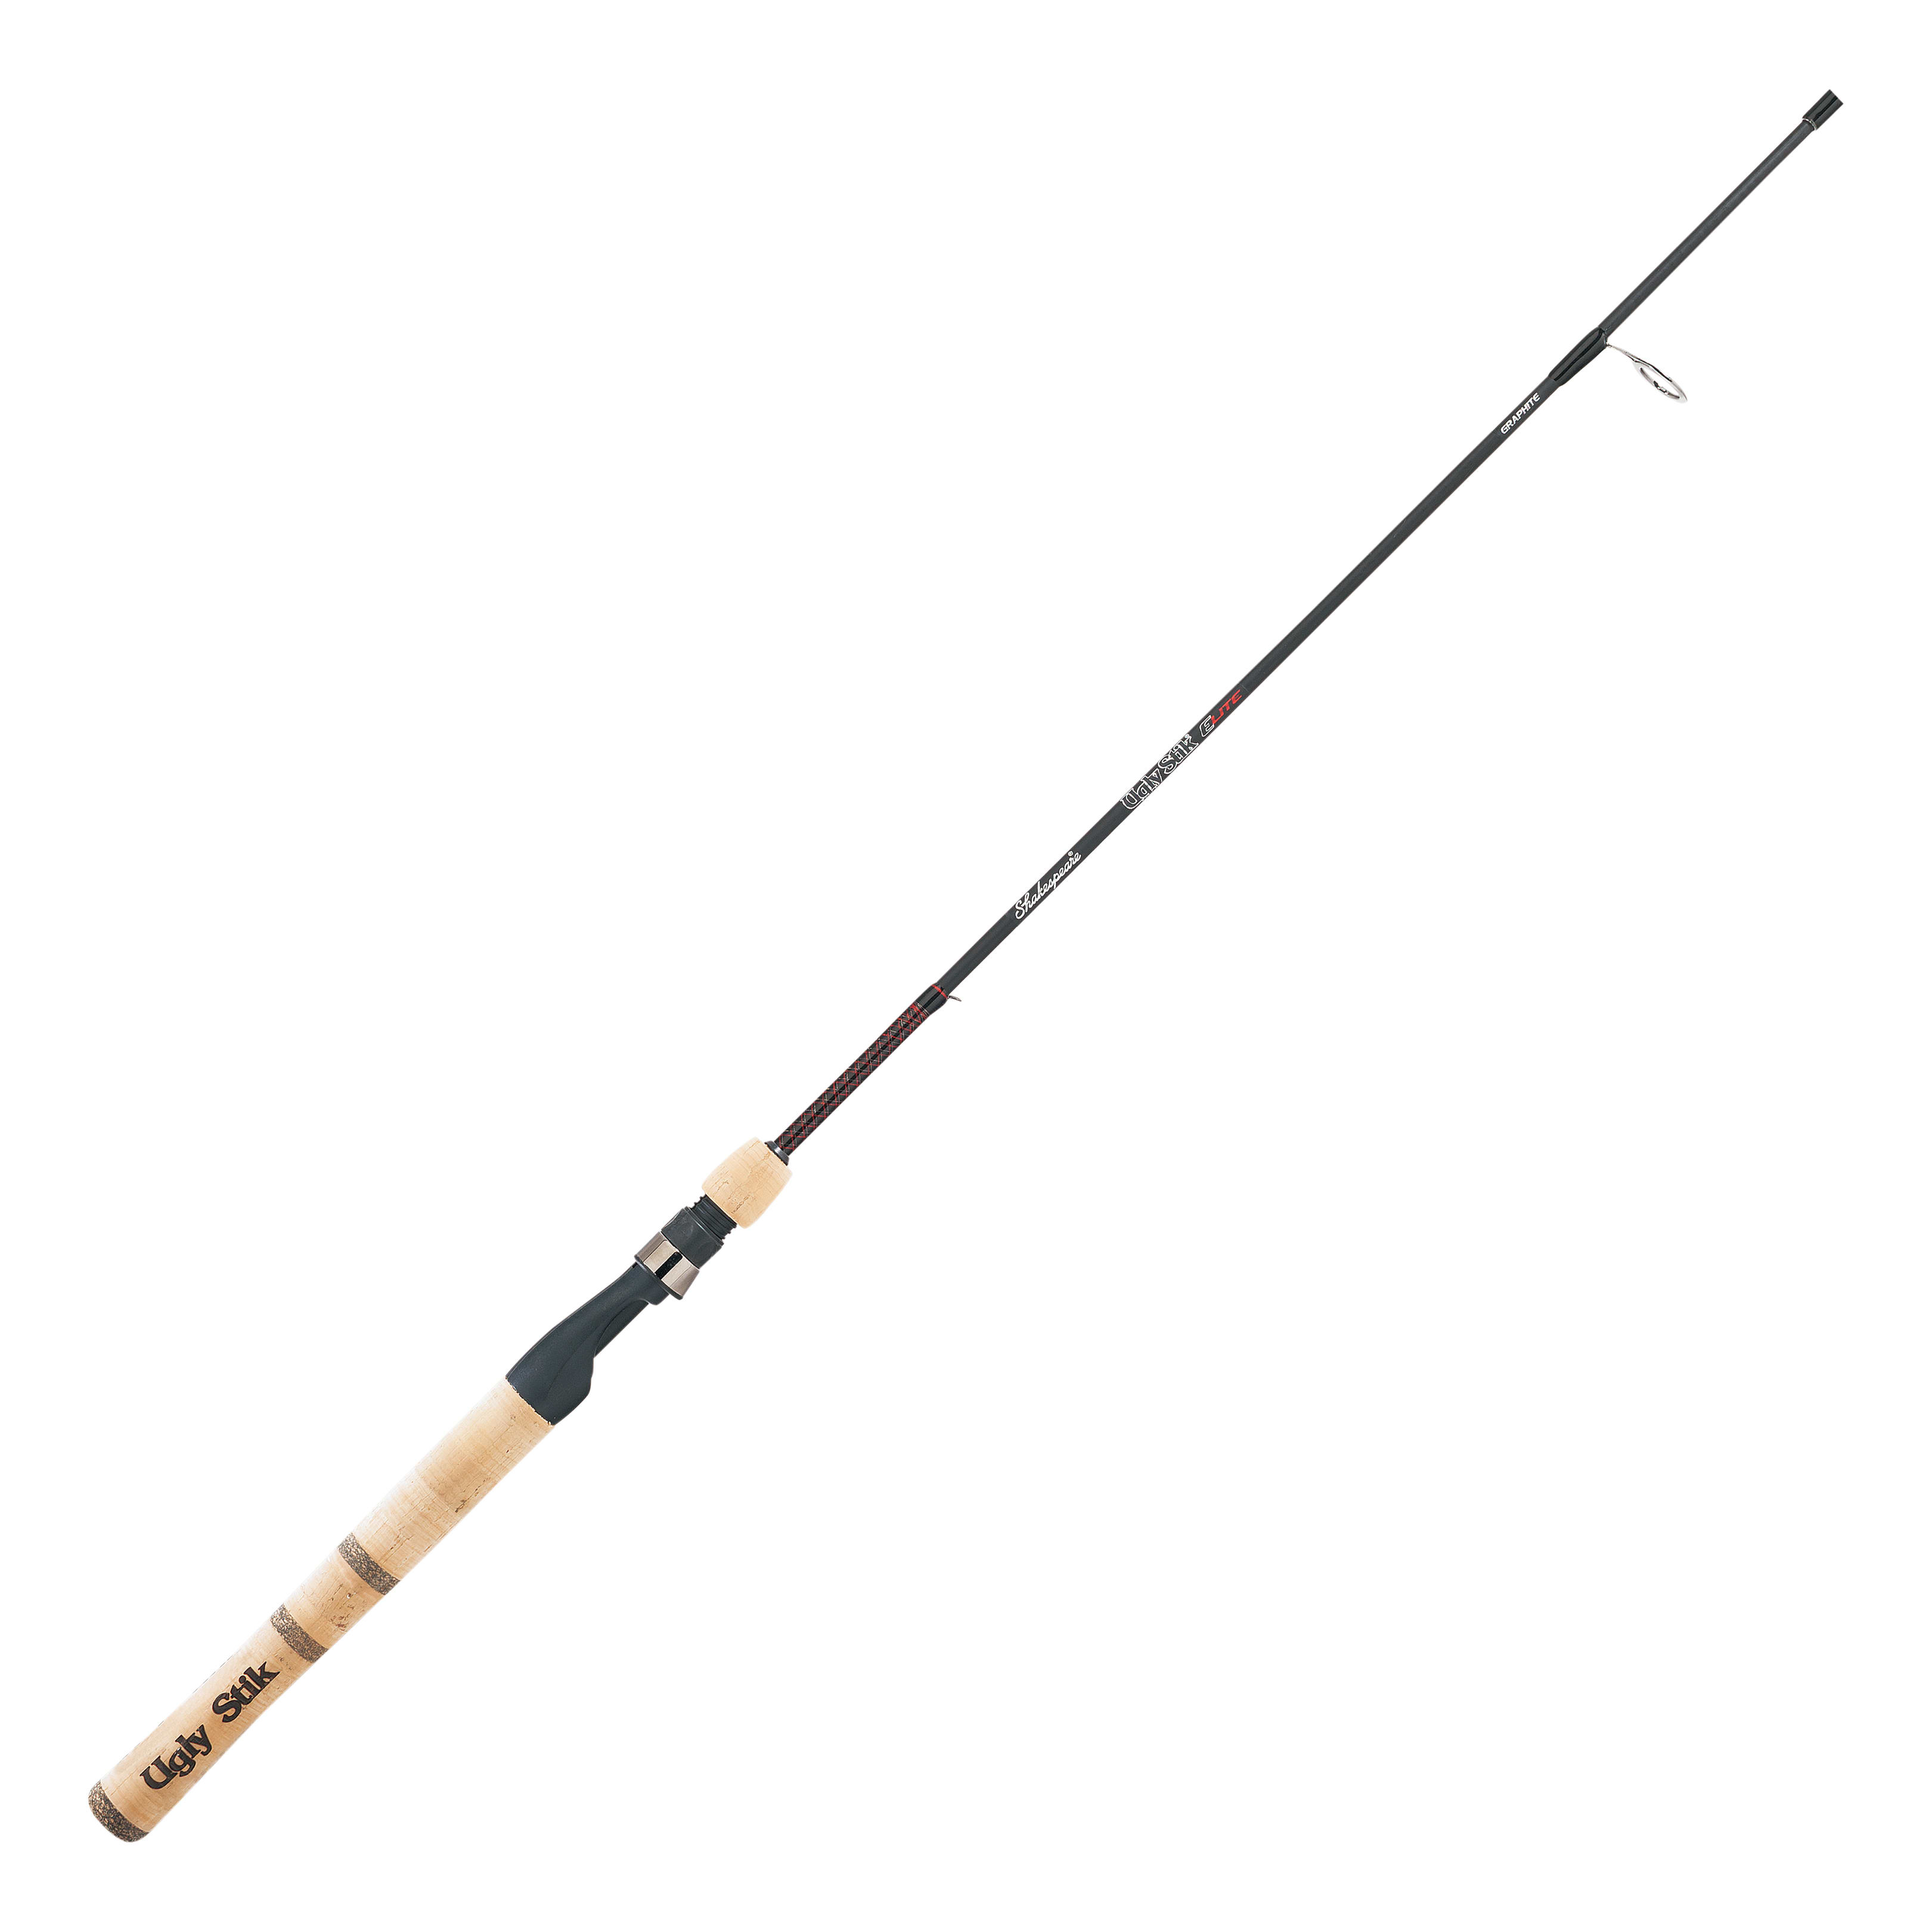 Shakespeare ultra light fresh water fishing Reel Model 2500 for Sale